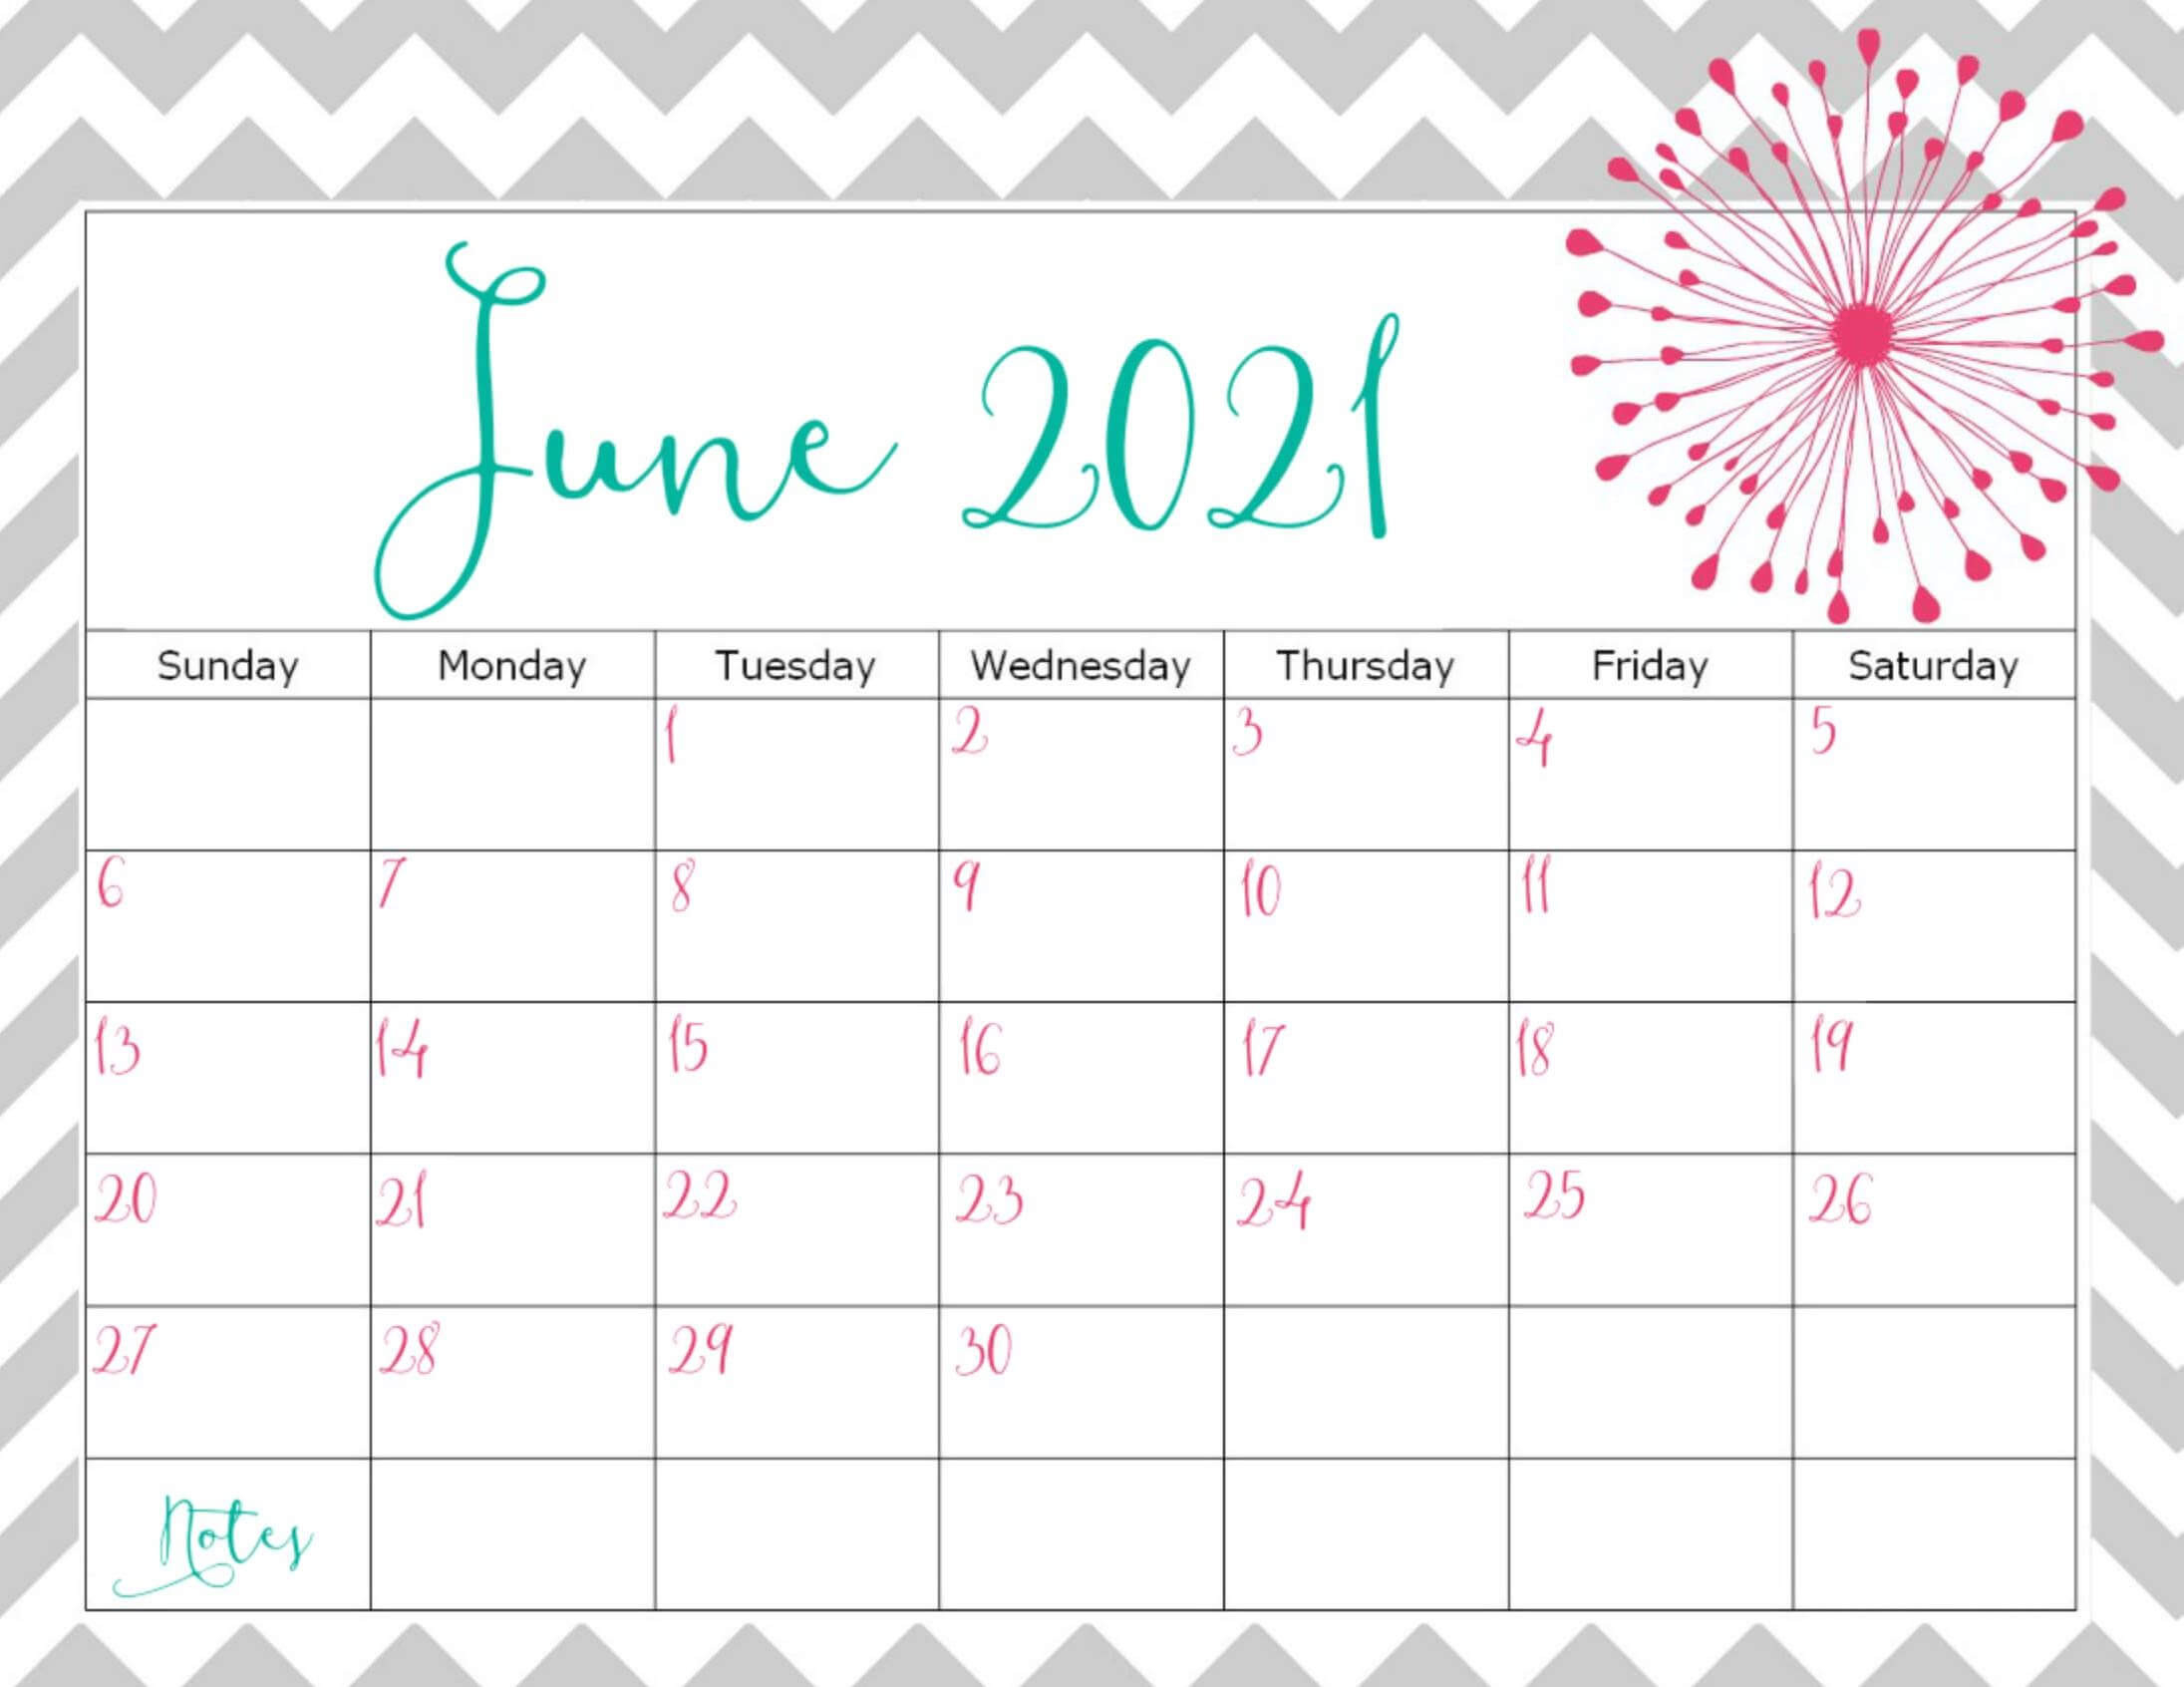 Cute June 2021 Calendar Template Word - Business Calendar-June 2021 Calendar Printable Template